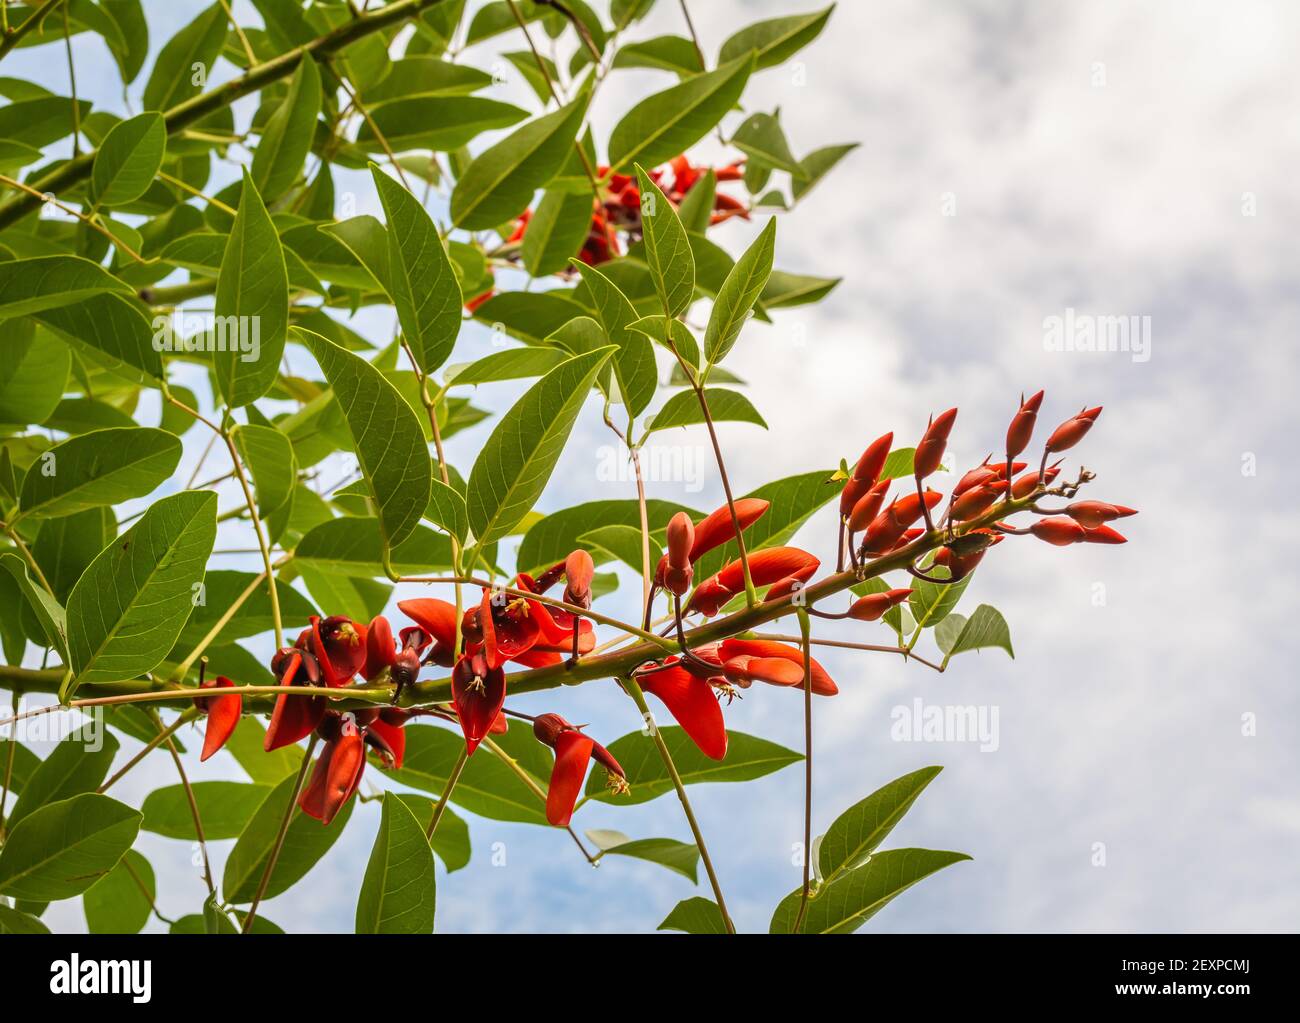 Erythrina crista-galli flowers.Cookspur árbol de coral. Flores rojas, cerosas del guisante del árbol de coral tierno a medio resistente del cockspur Foto de stock